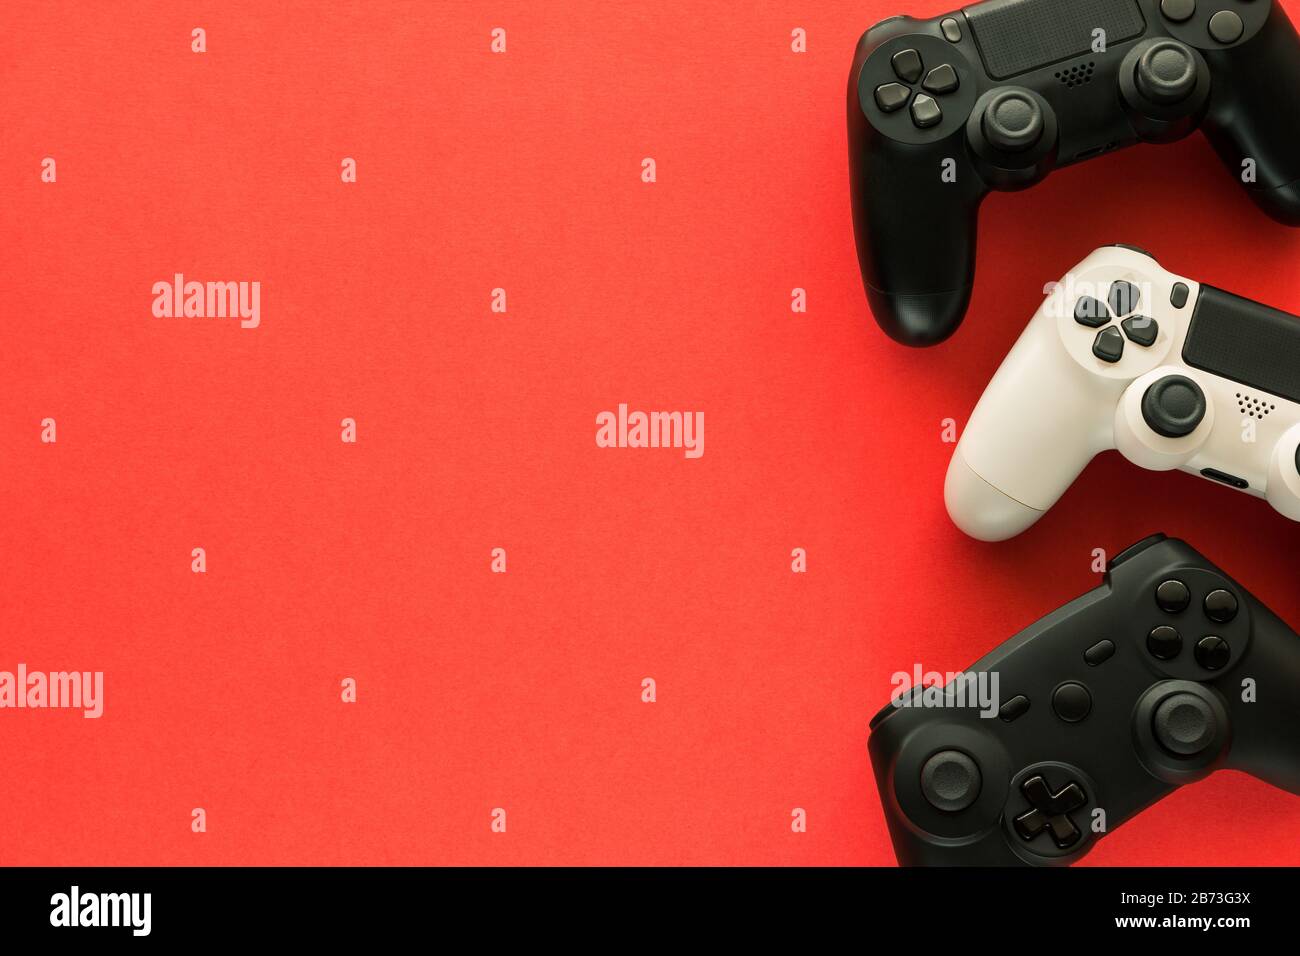 Stock photo de trois gamepads sur un fond rouge et copier l'espace sur le côté gauche Banque D'Images